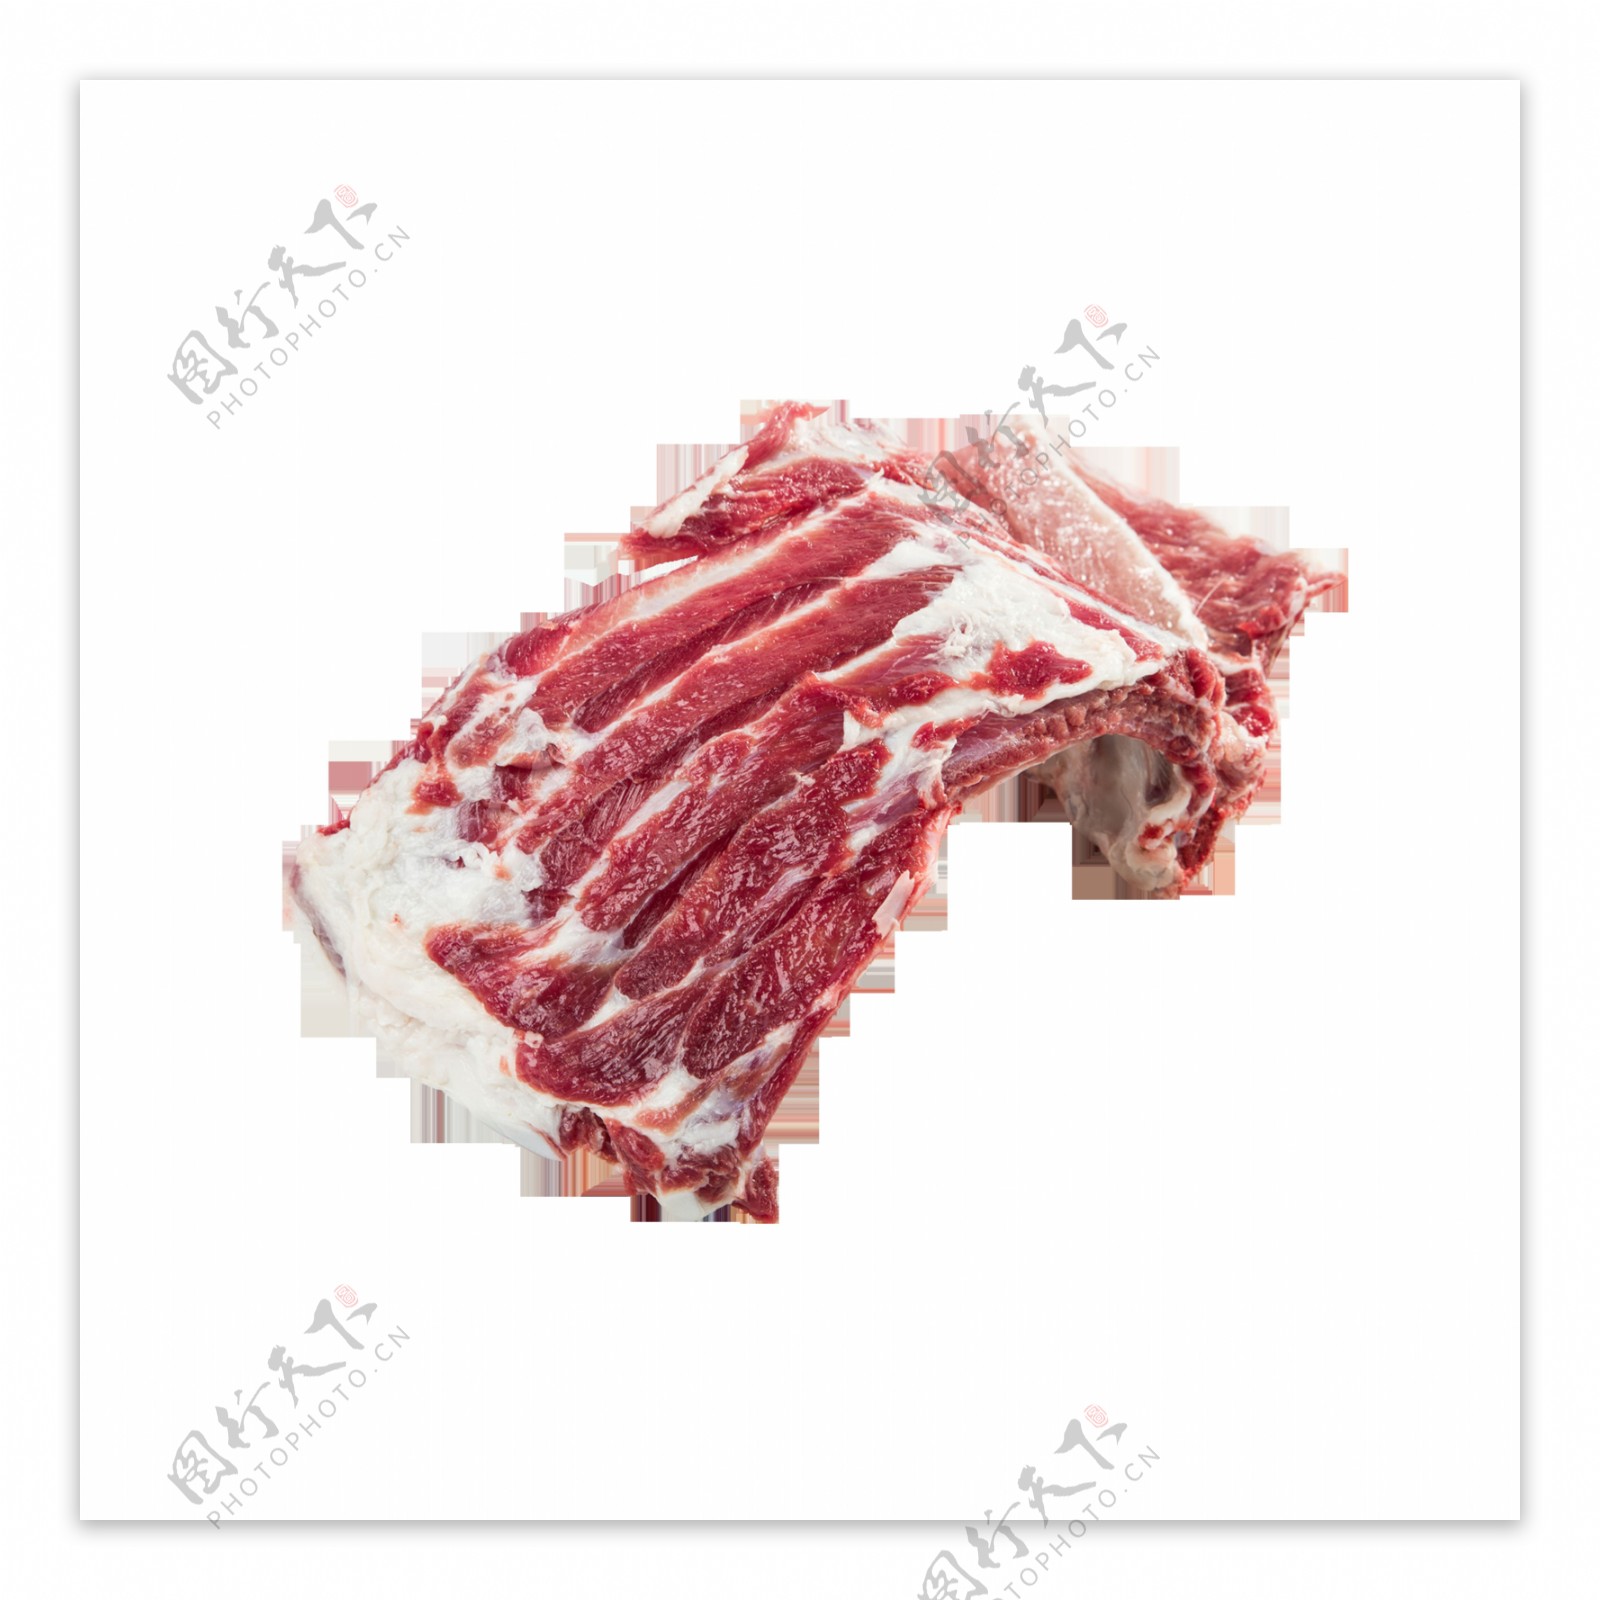 厂家批发供应分割猪肉猪龙骨/猪带肉脊骨/冷冻猪颈骨.-阿里巴巴